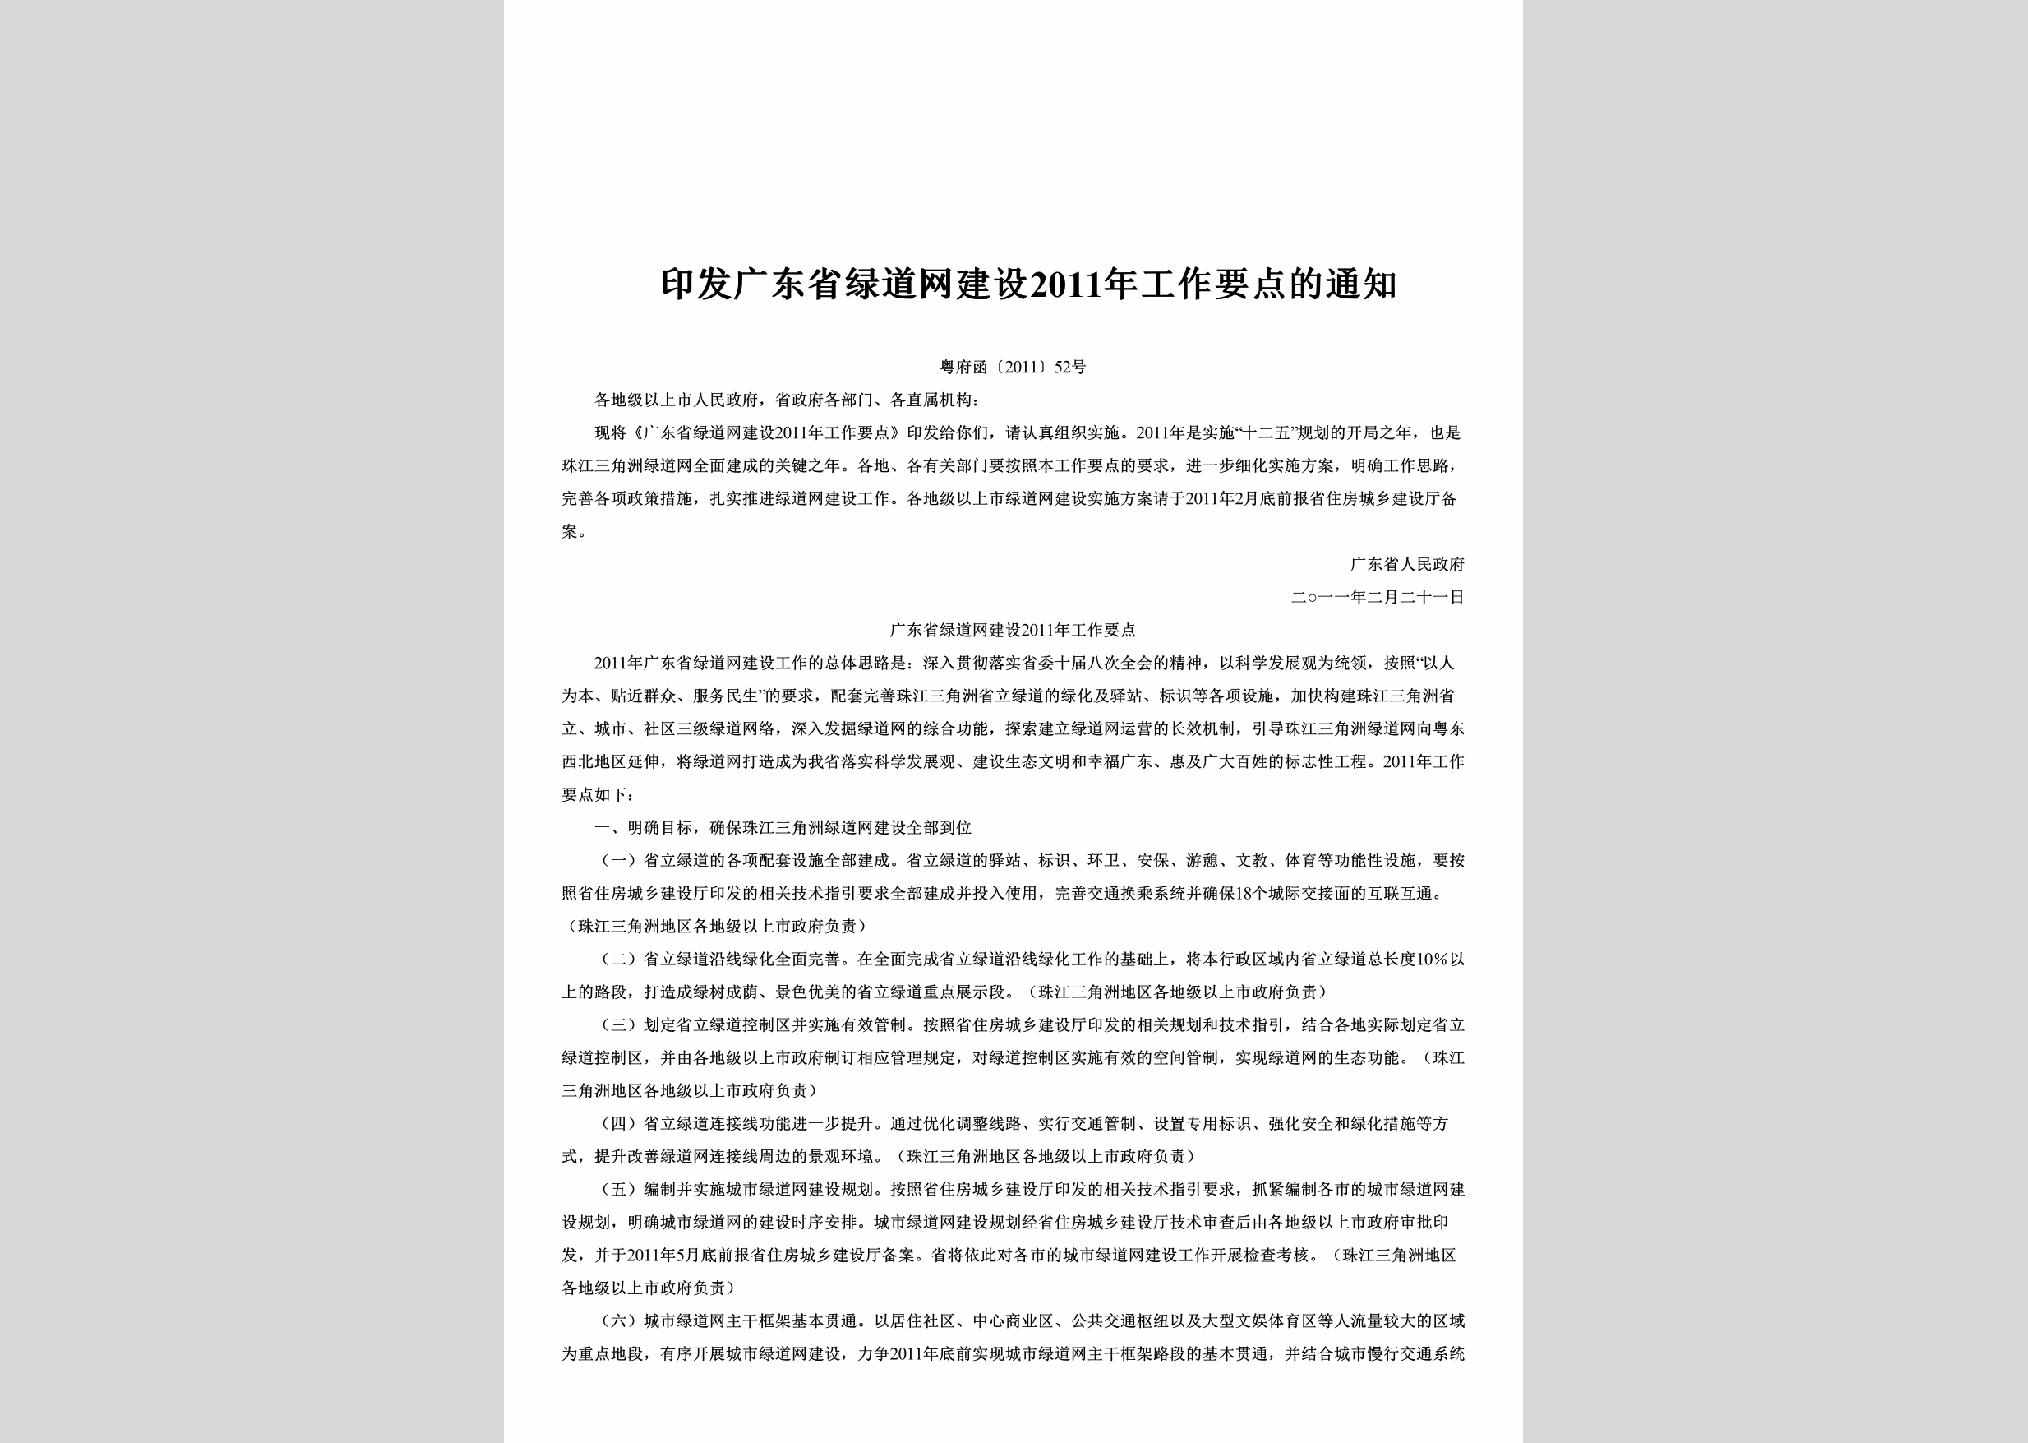 粤府函[2011]52号：印发广东省绿道网建设2011年工作要点的通知